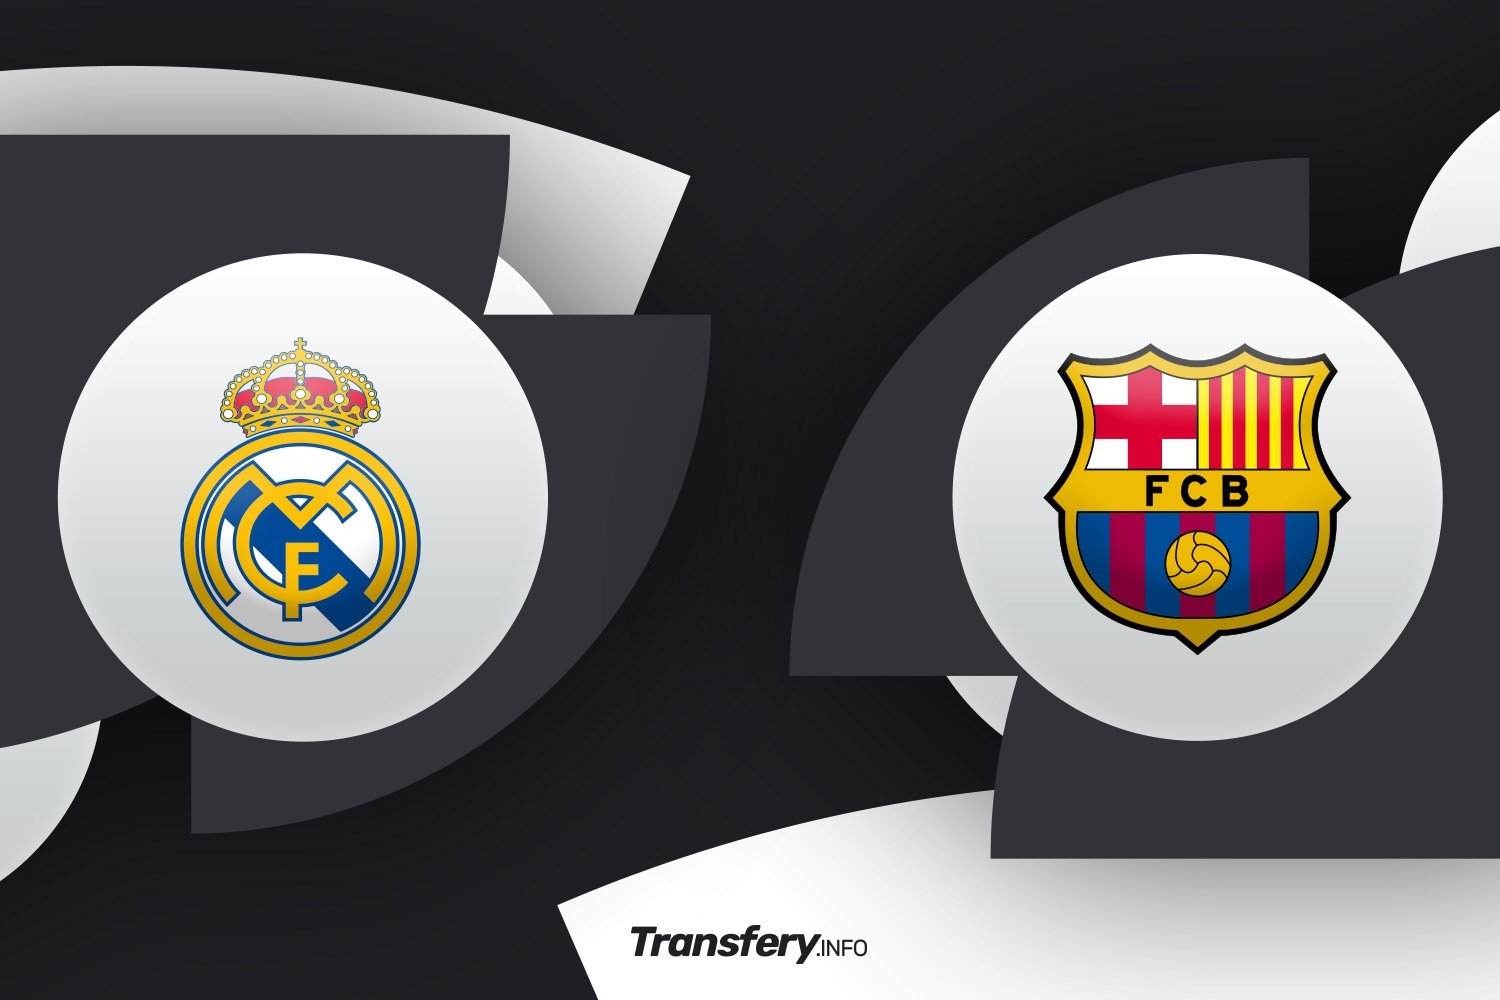 Real Madryt gra z Barceloną o Superpuchar Hiszpanii: Znamy składy, Carlo Ancelotti zdecydował w sprawie bramkarza [OFICJALNIE]